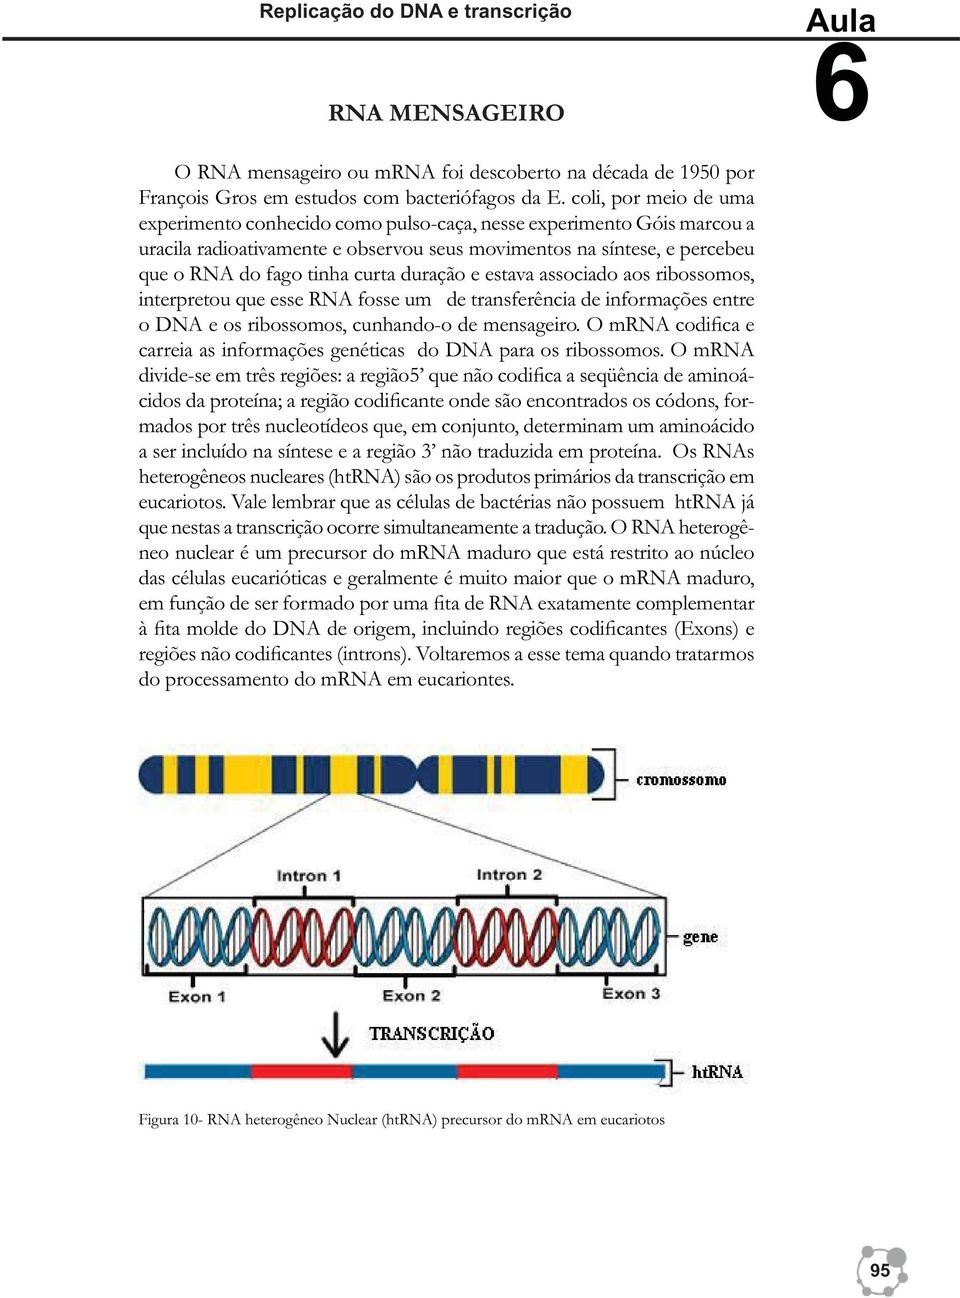 duração e estava associado aos ribossomos, interpretou que esse RNA fosse um de transferência de informações entre o DNA e os ribossomos, cunhando-o de mensageiro.